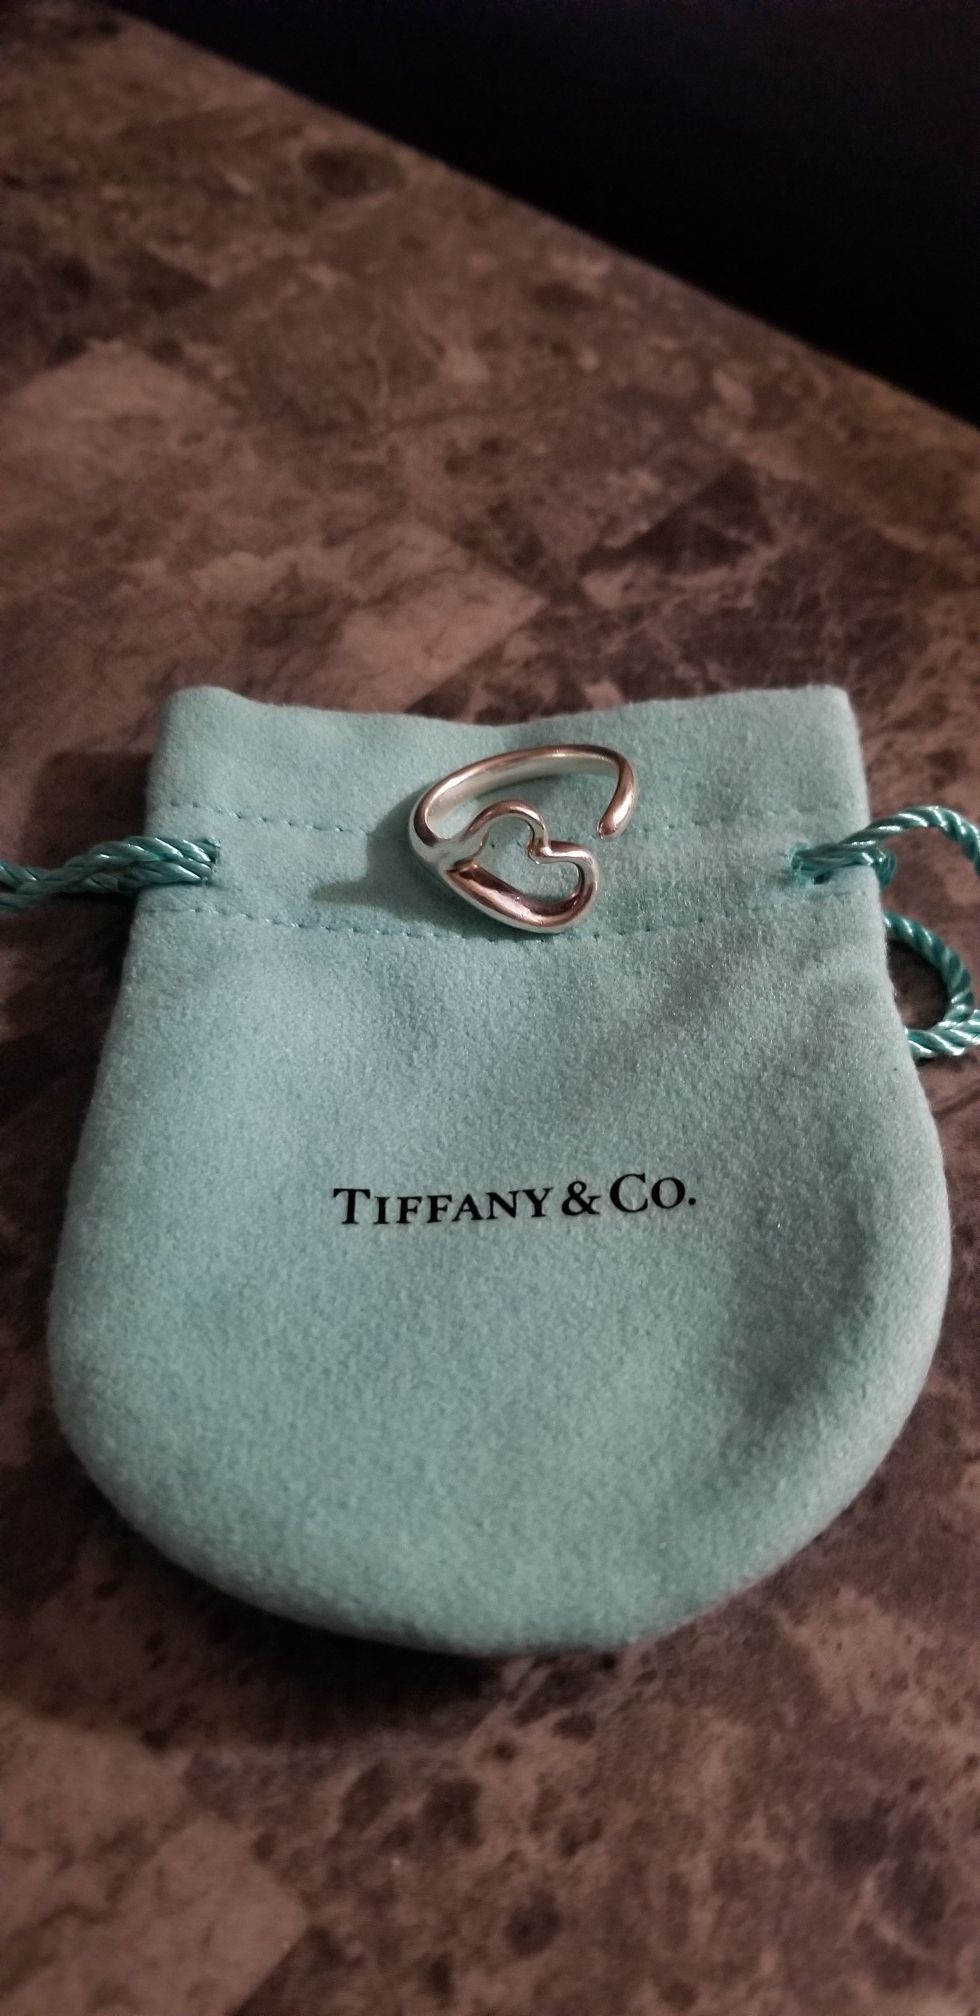 Tiffany & Co. Open Heart Ring